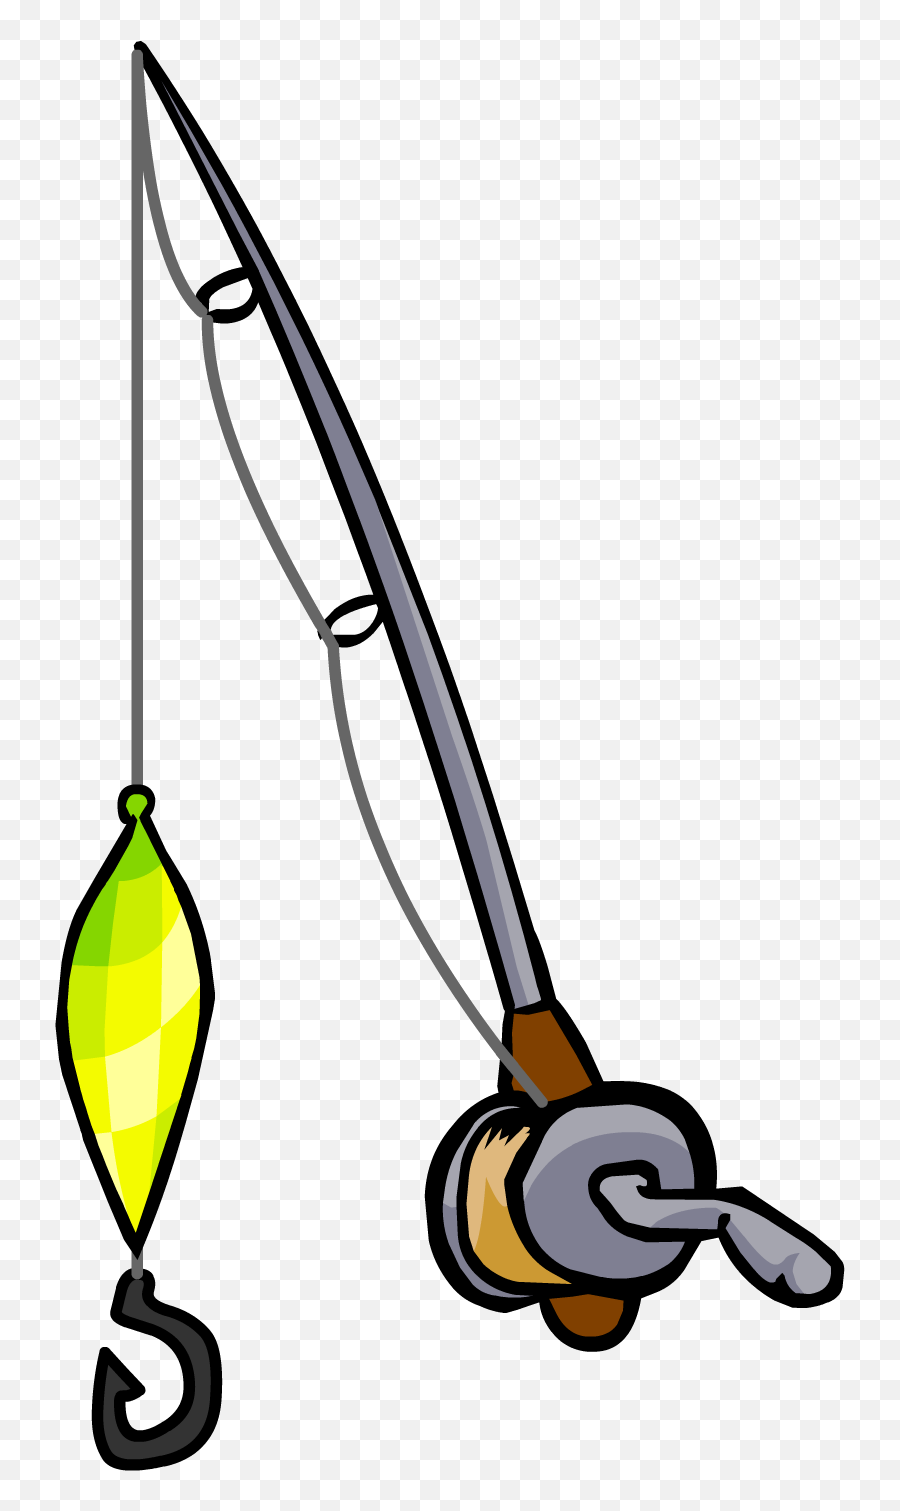 Flashing Lure Fishing Rod - Draw A Fishing Road Easy Emoji,Fishing Emojis